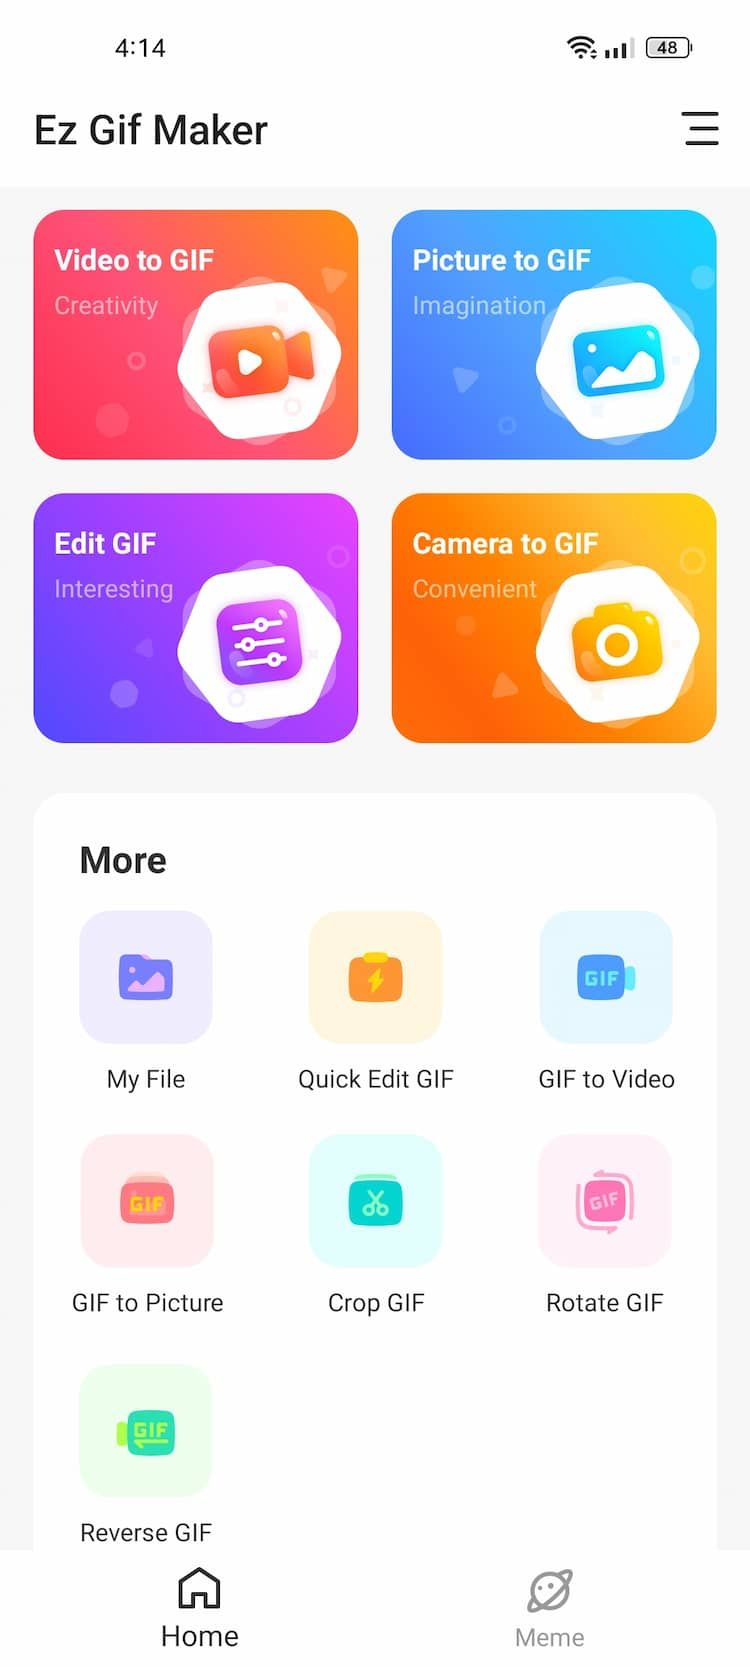 EzGIF Maker App Home